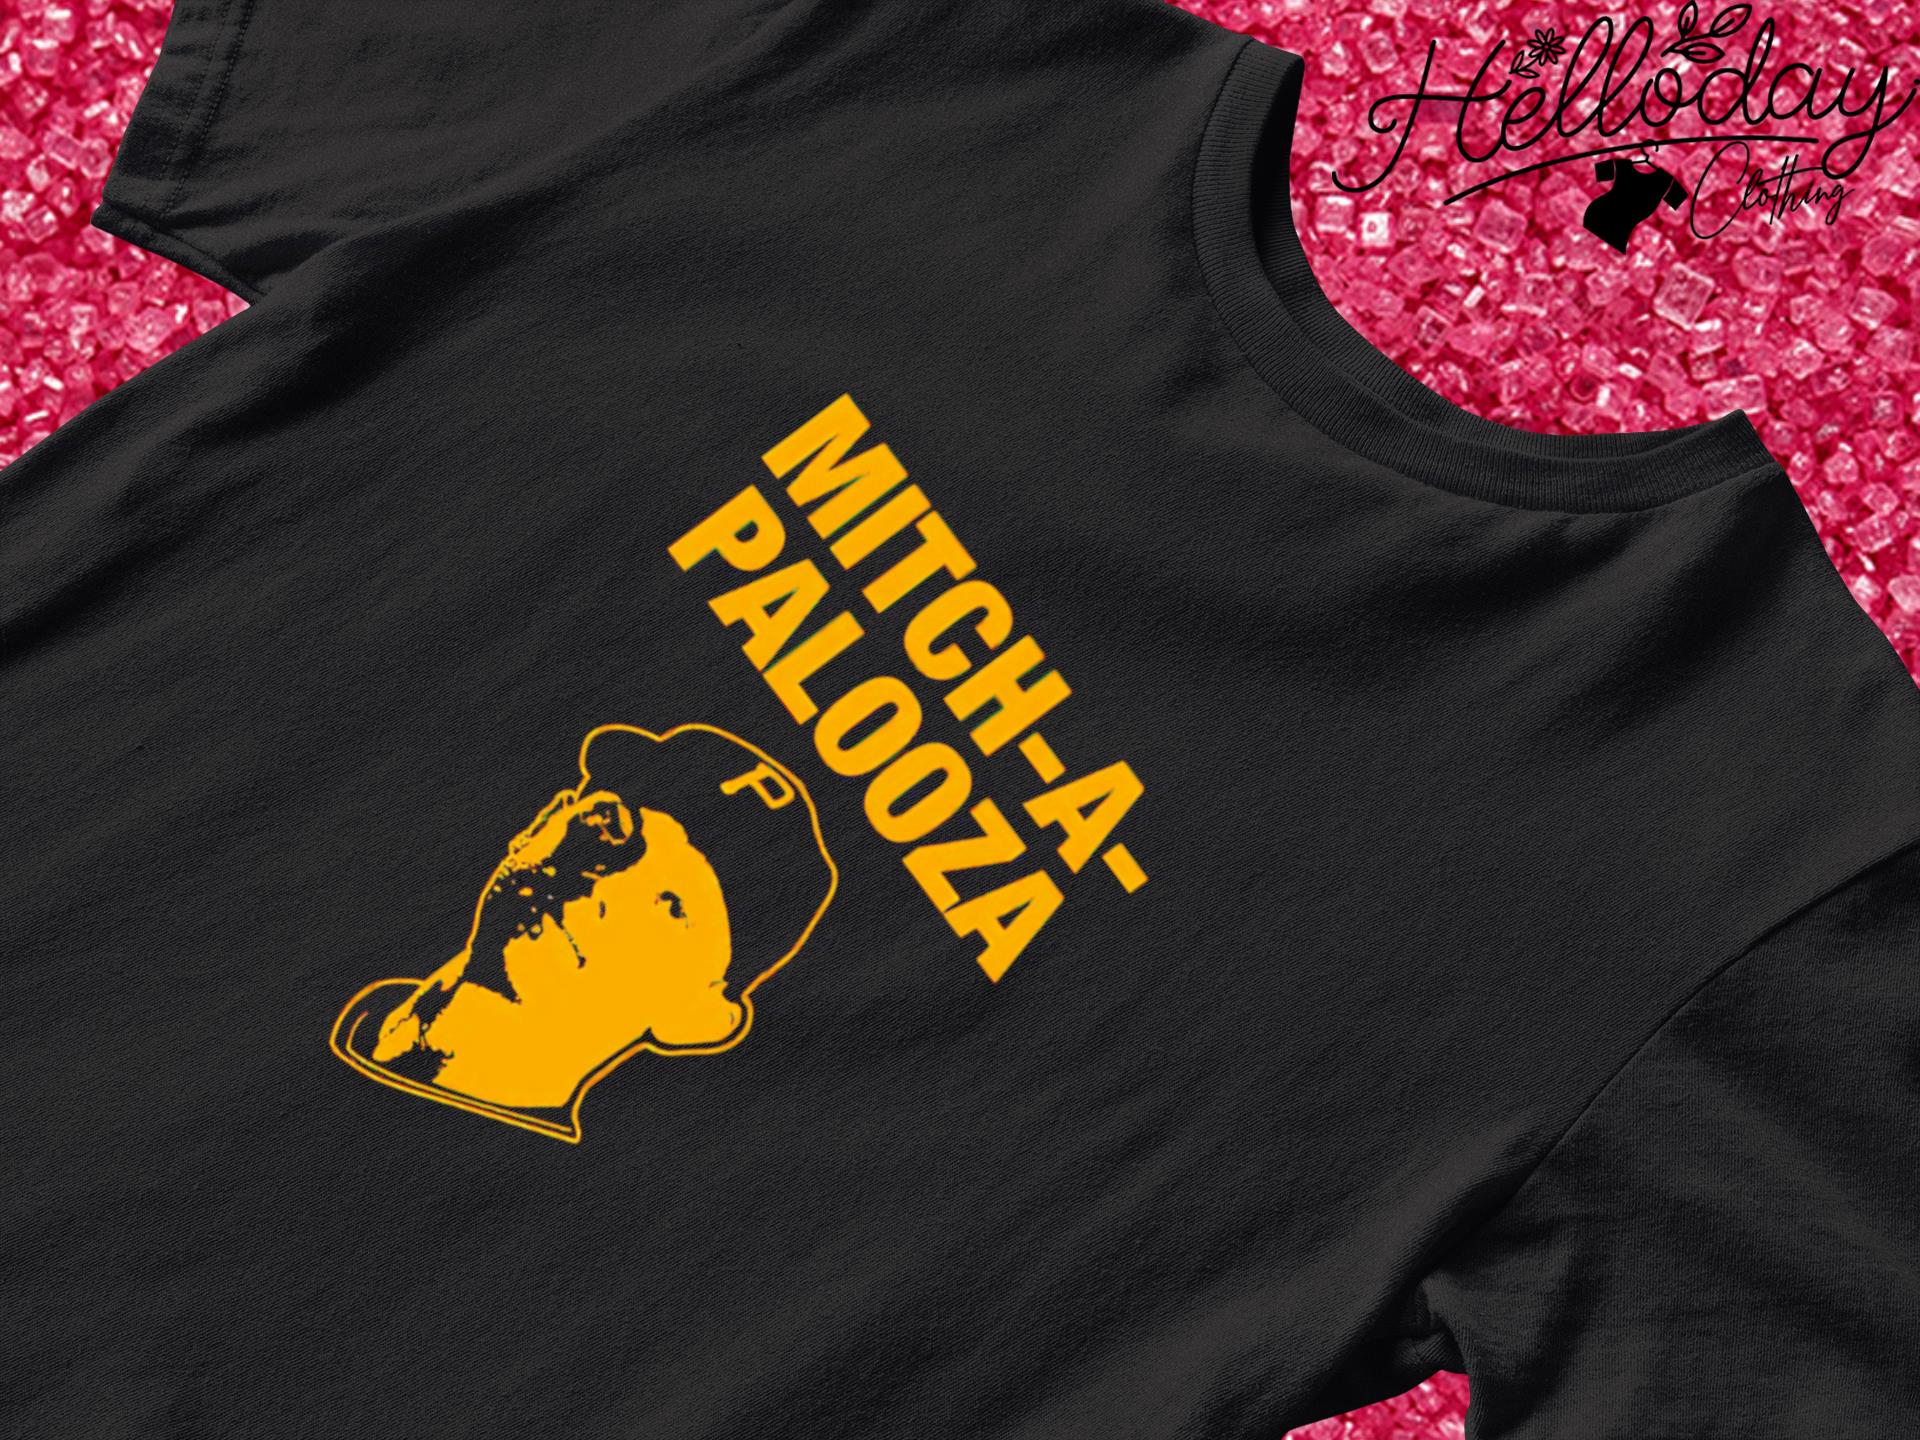 Mitch-a-Palooza Pittsburgh Pirates shirt